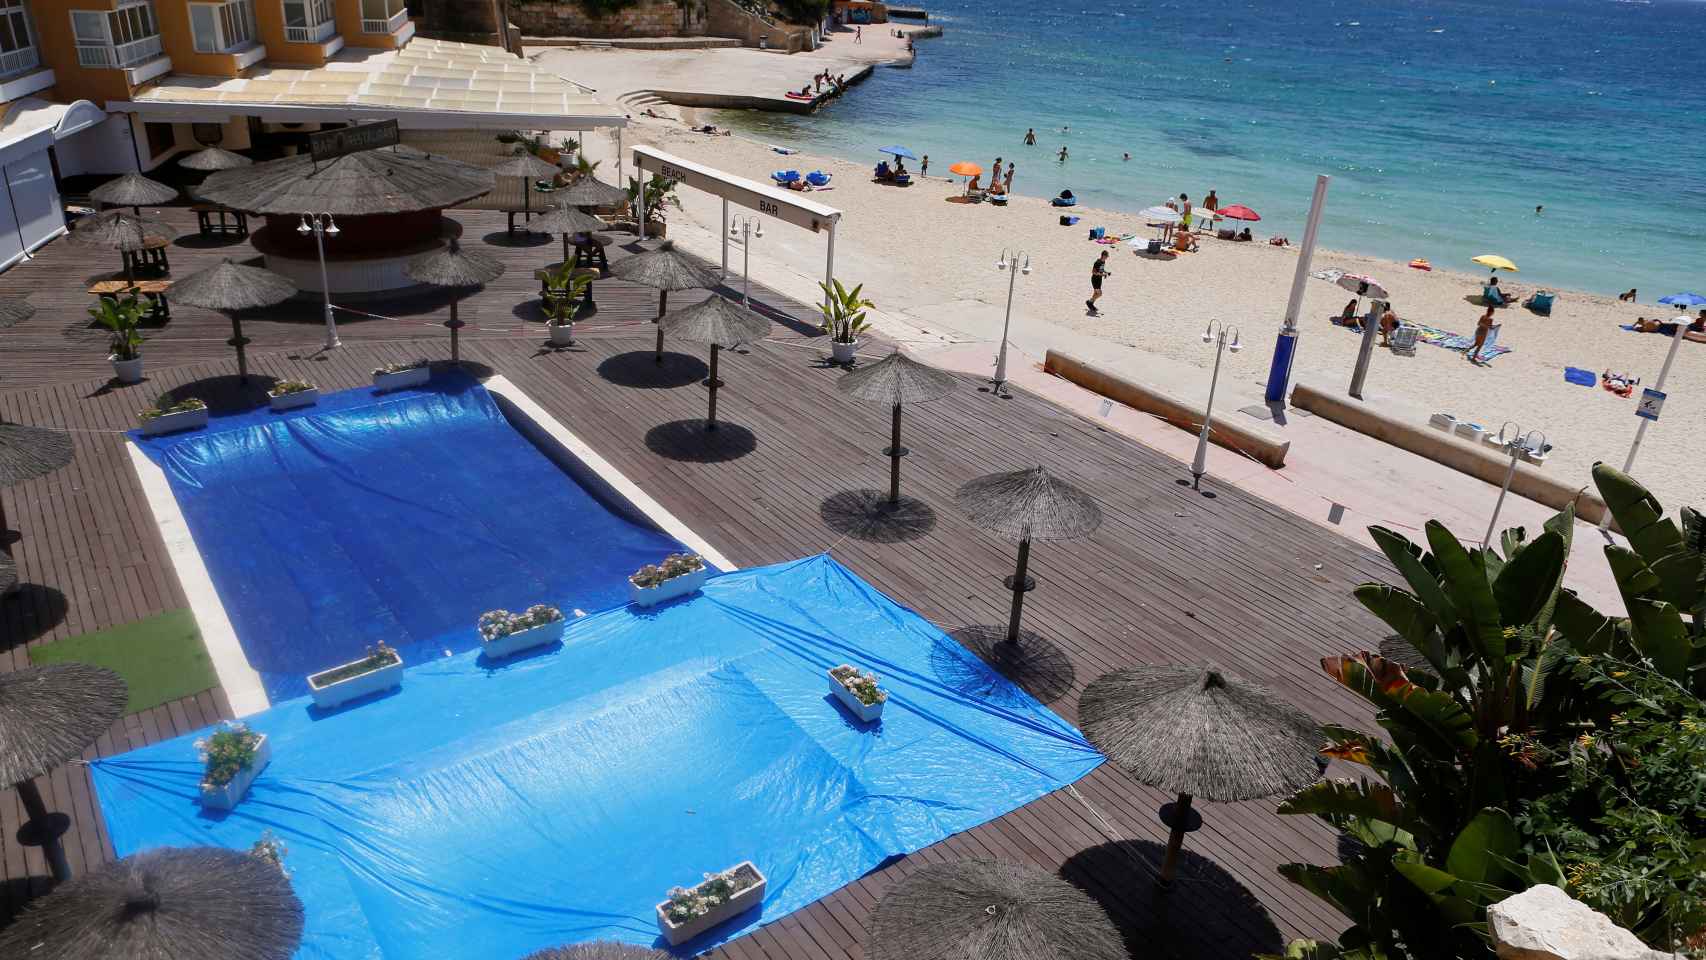 La piscina de un hotel de Mallorca, cerrada a cal y canto mientras la gente disfruta de la playa.